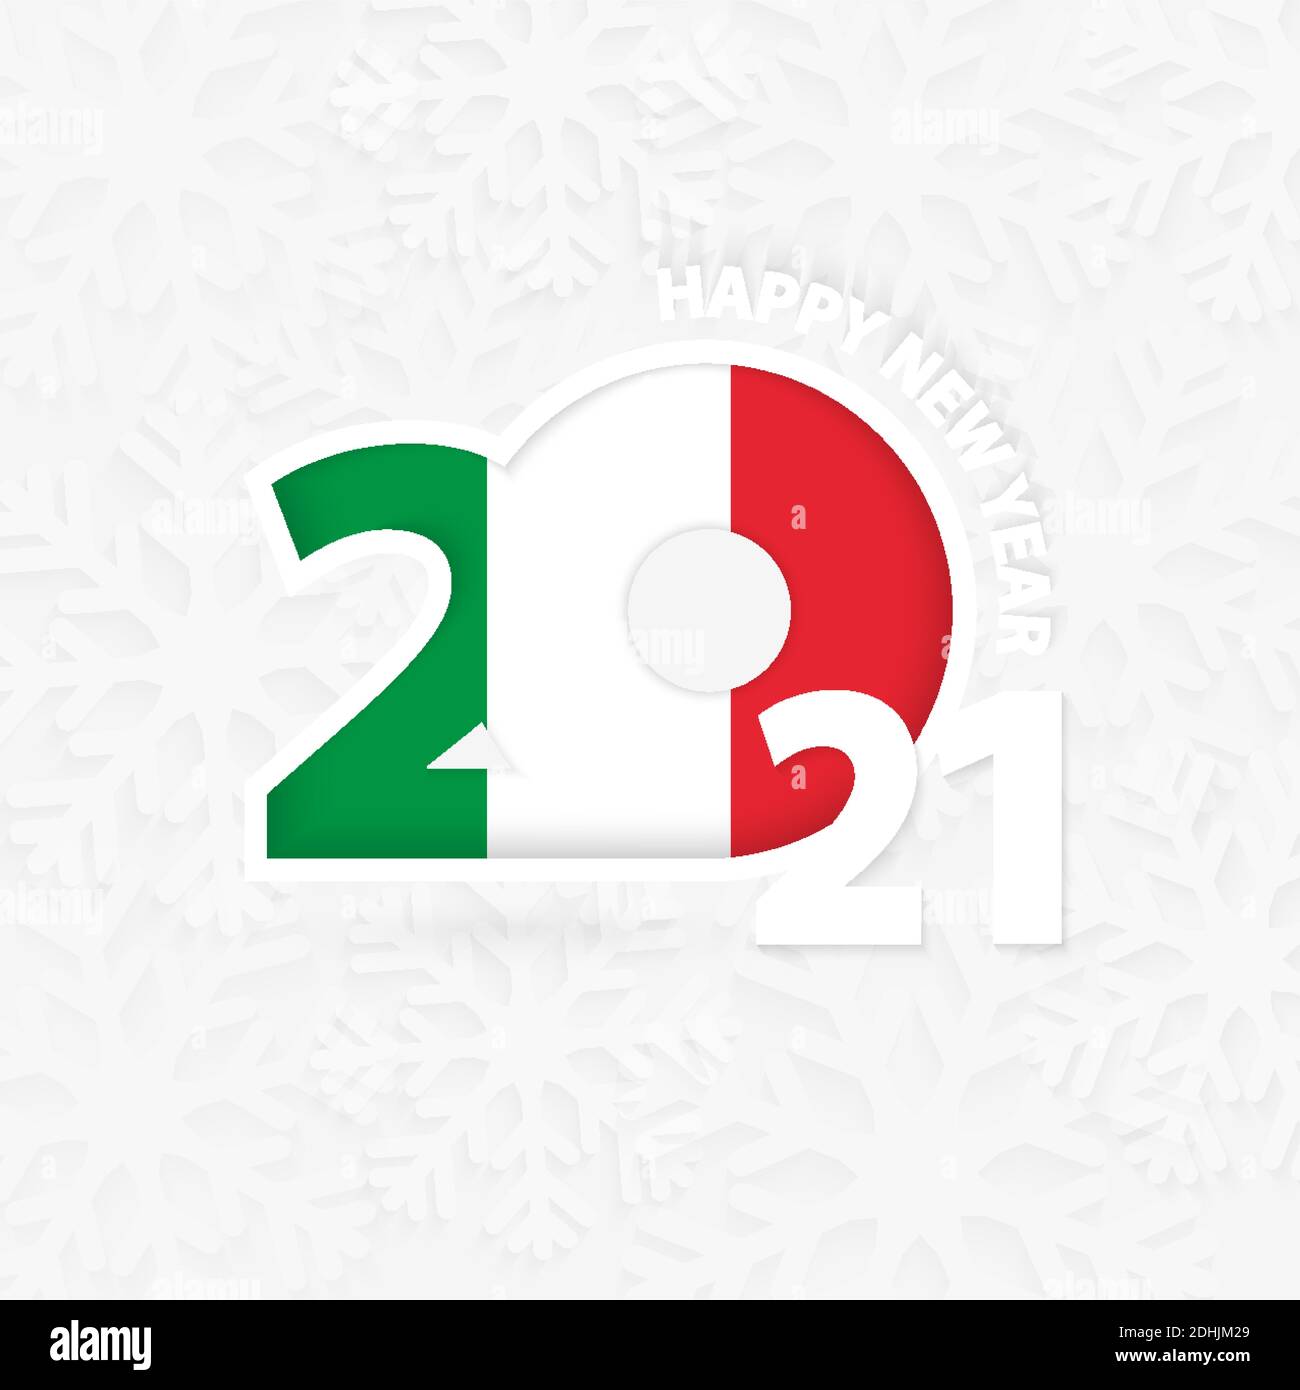 Felice anno nuovo 2021 per l'Italia su fondo fiocco di neve. Saluto l'Italia con il nuovo 2021° anno. Illustrazione Vettoriale